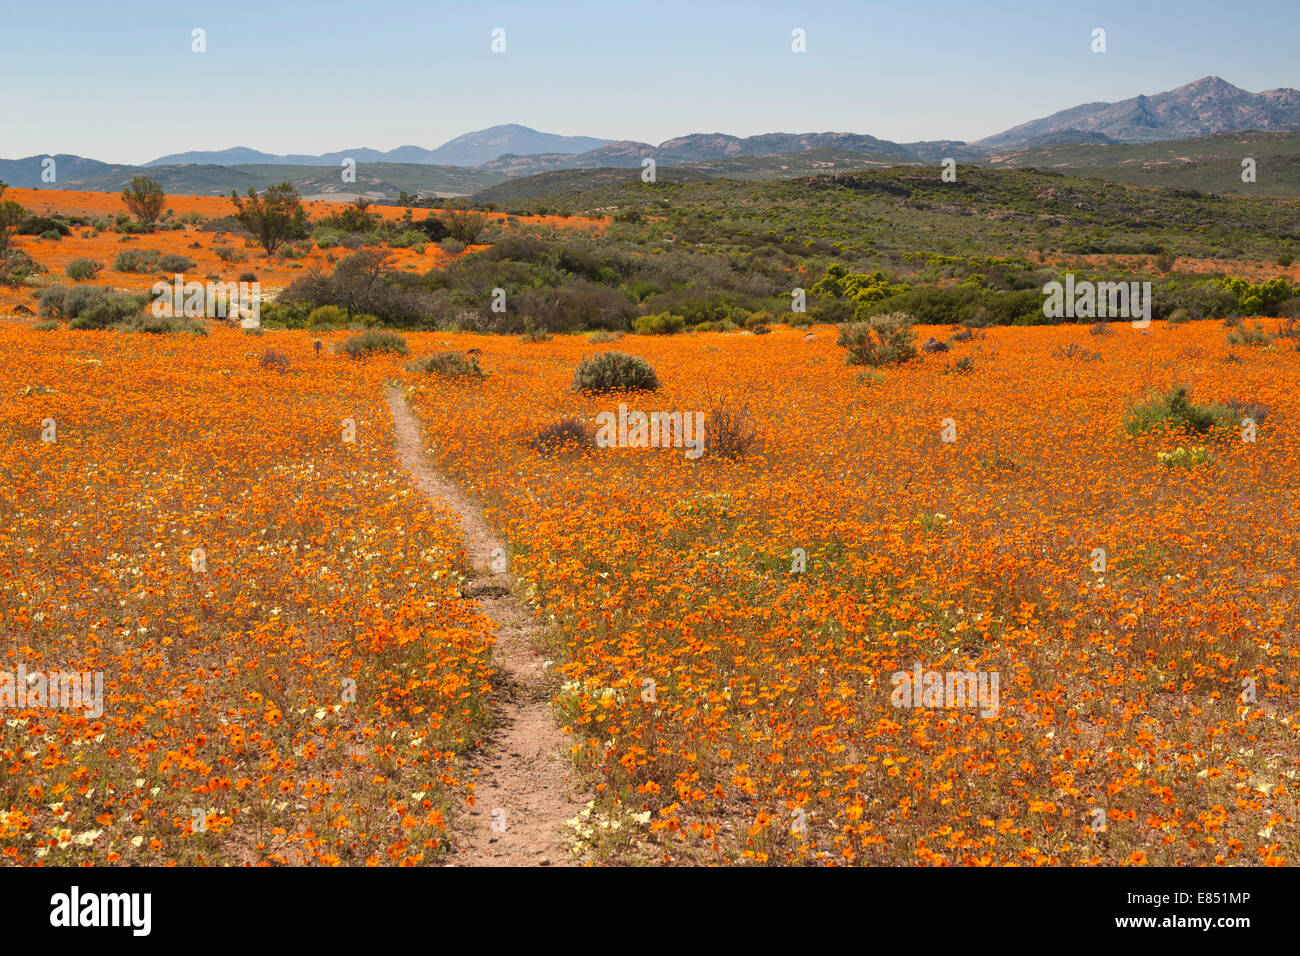 La Korhaan sendero a través de campos de flores silvestres en el Parque Nacional Namaqua en Sudáfrica. Foto de stock